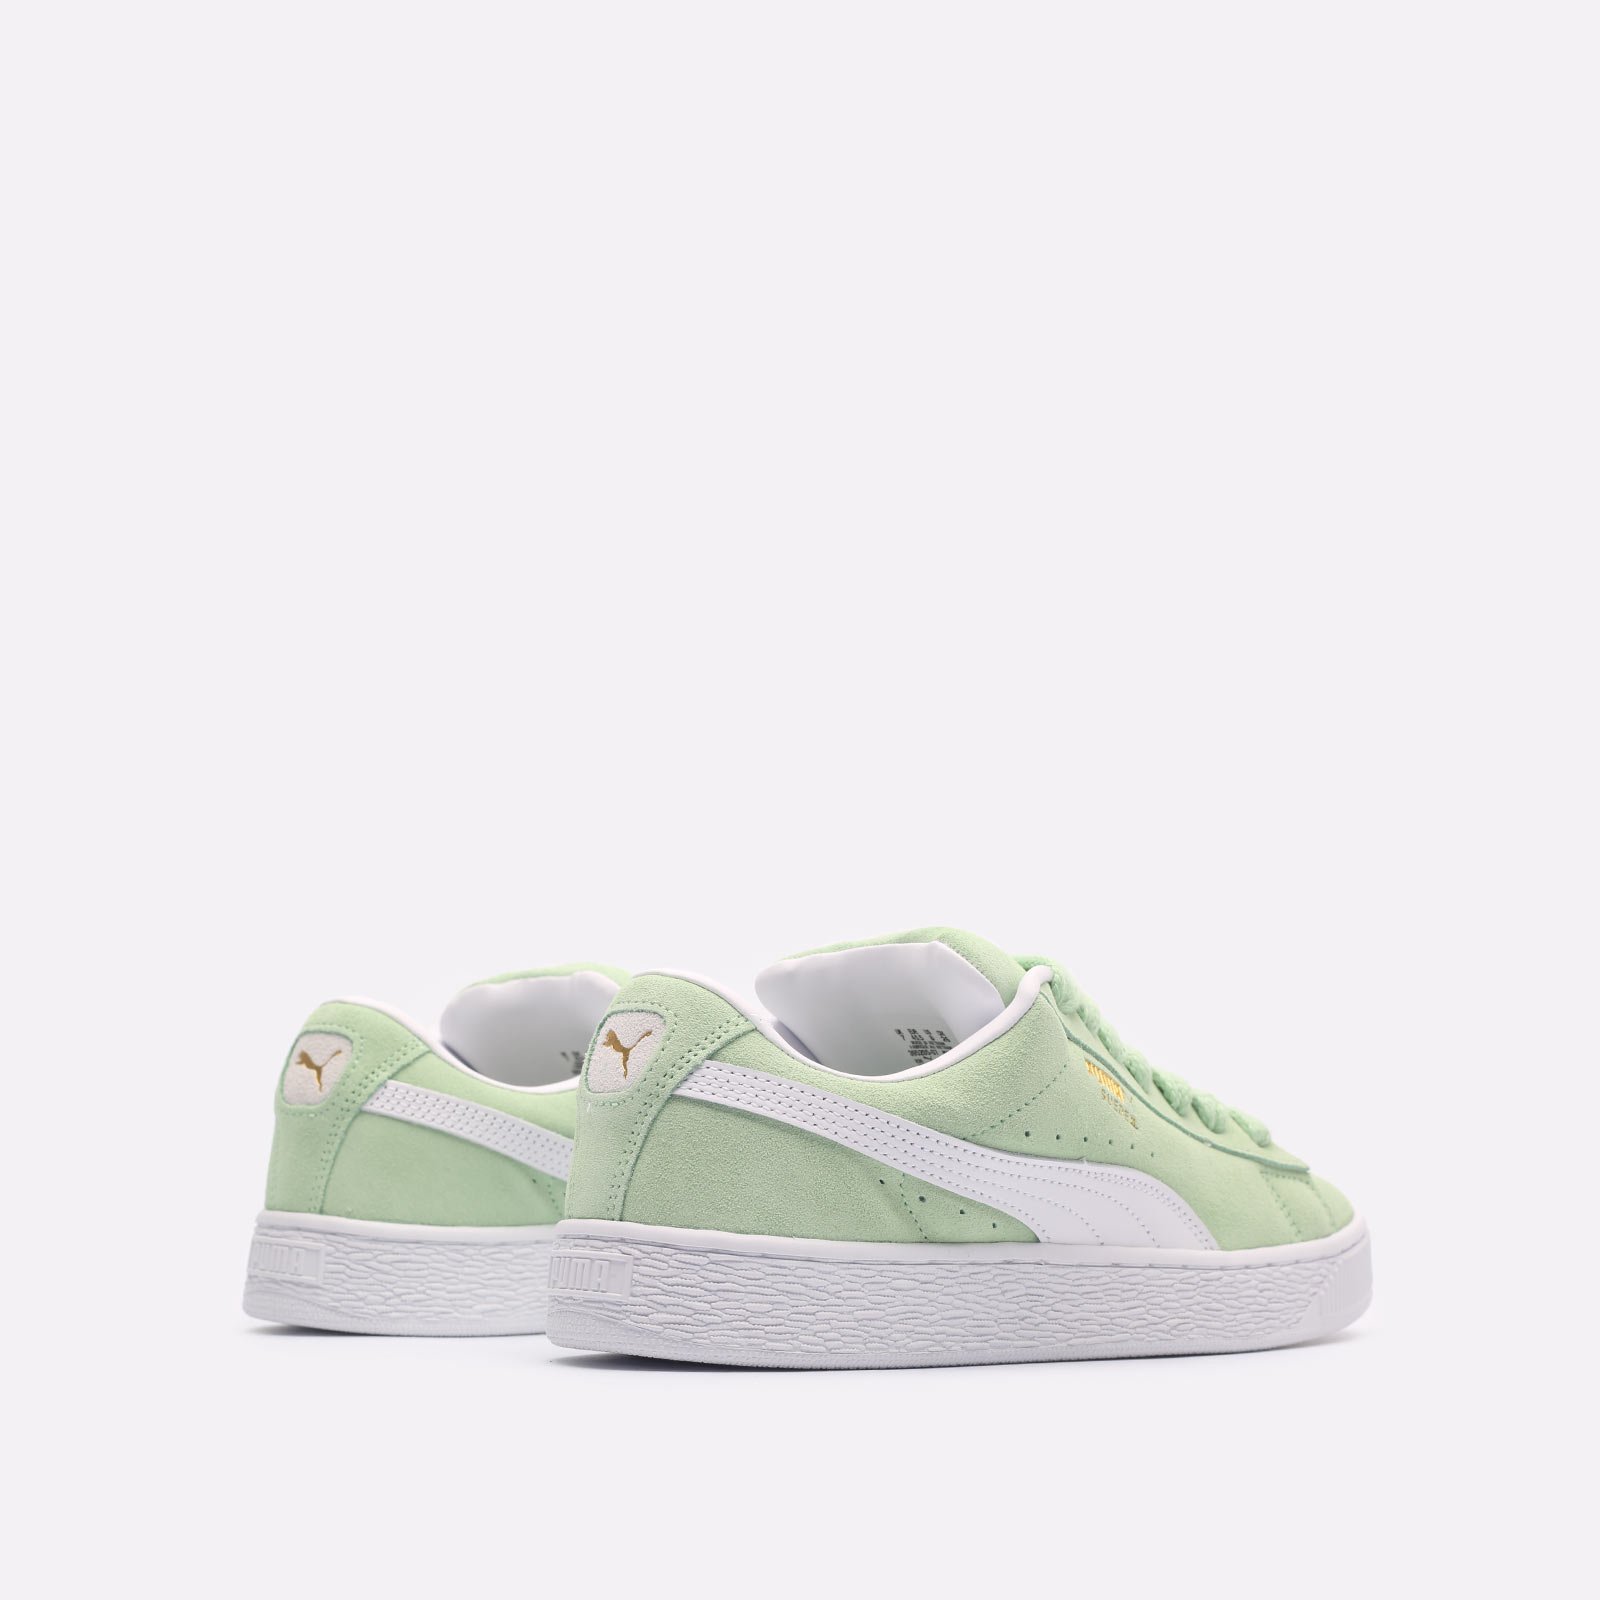 мужские зеленые кроссовки PUMA Suede XL 39520507 - цена, описание, фото 3